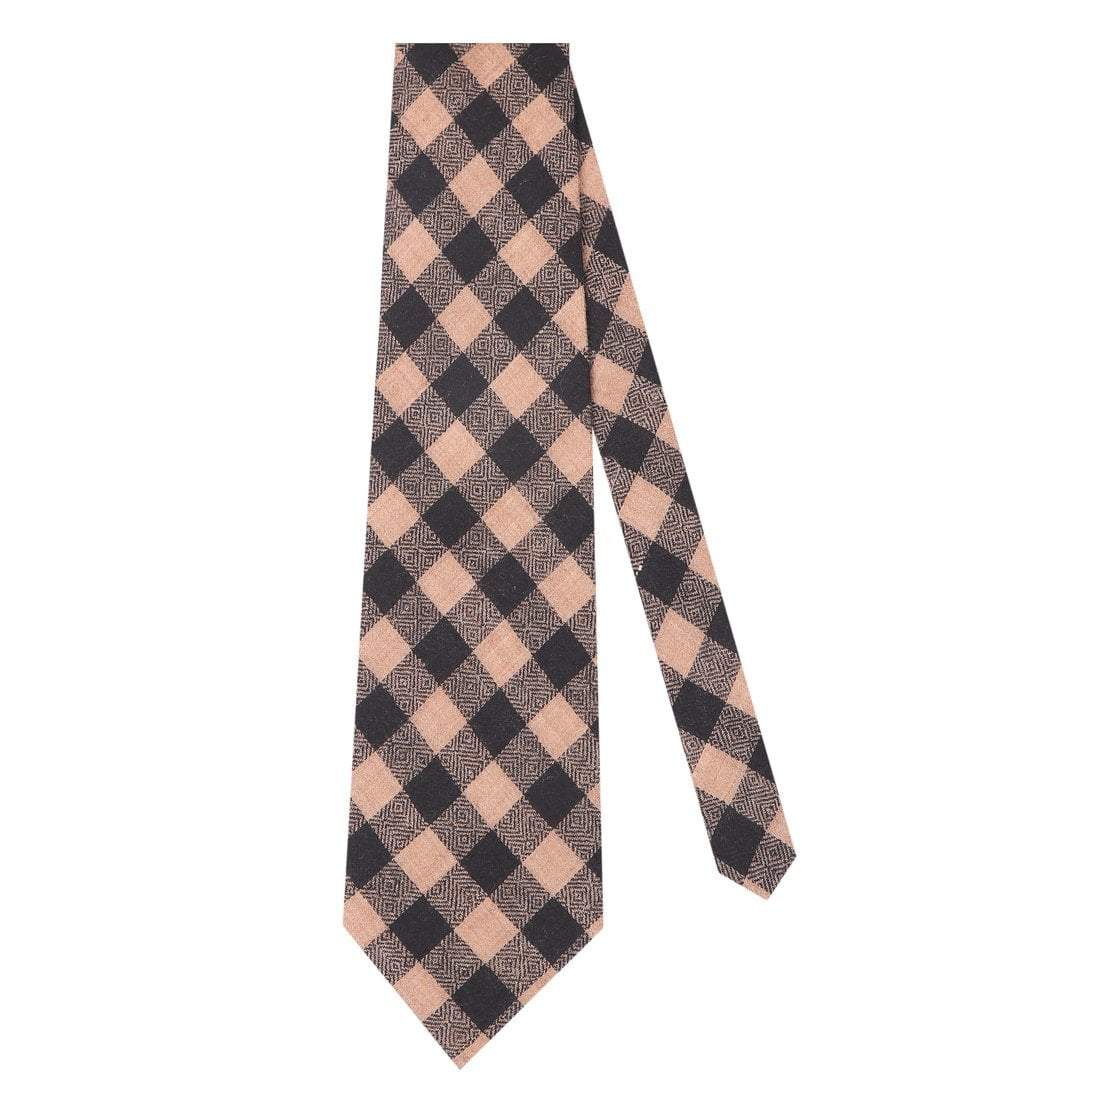 Pashtush Shawl Store Tie Pashtush Mens Pashmina Necktie, Soft and Luxurious, Checkered Design, Extra fine Ties for Men, Free Size